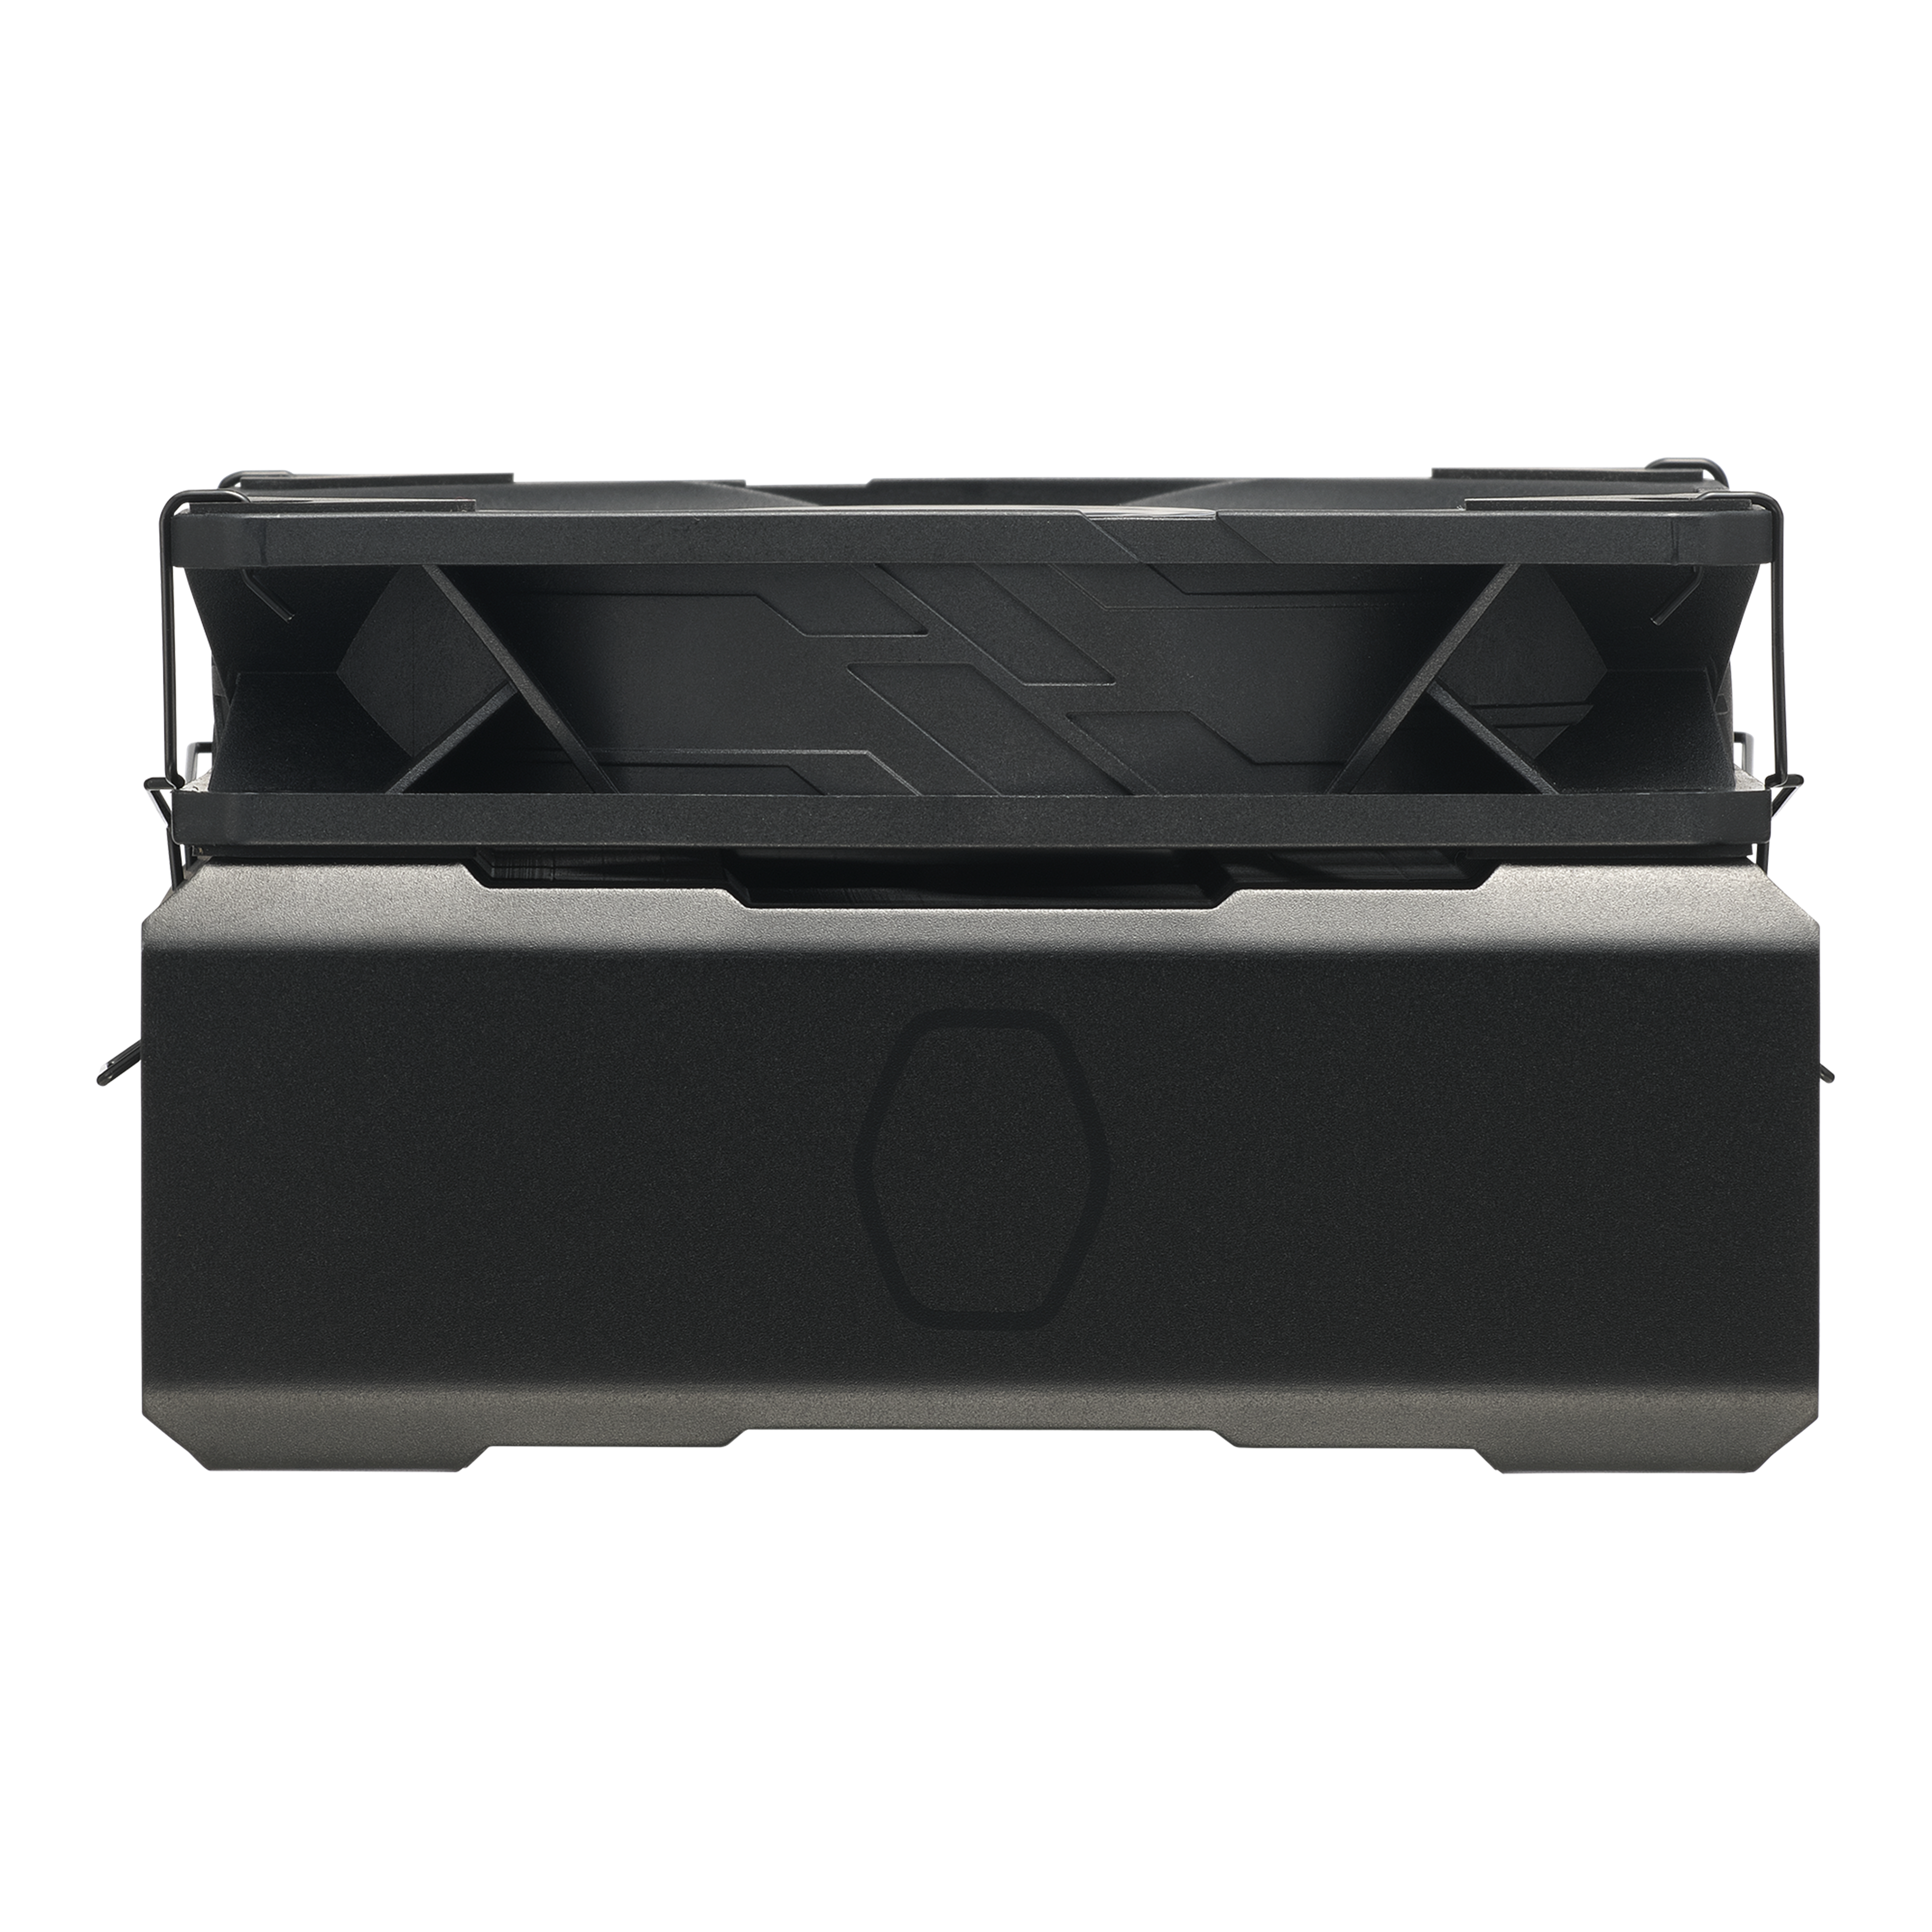 Nouveau Cooler Master Hyper 212 Black, à ne pas confondre avec le Black  Edition ! - Hardware & Co